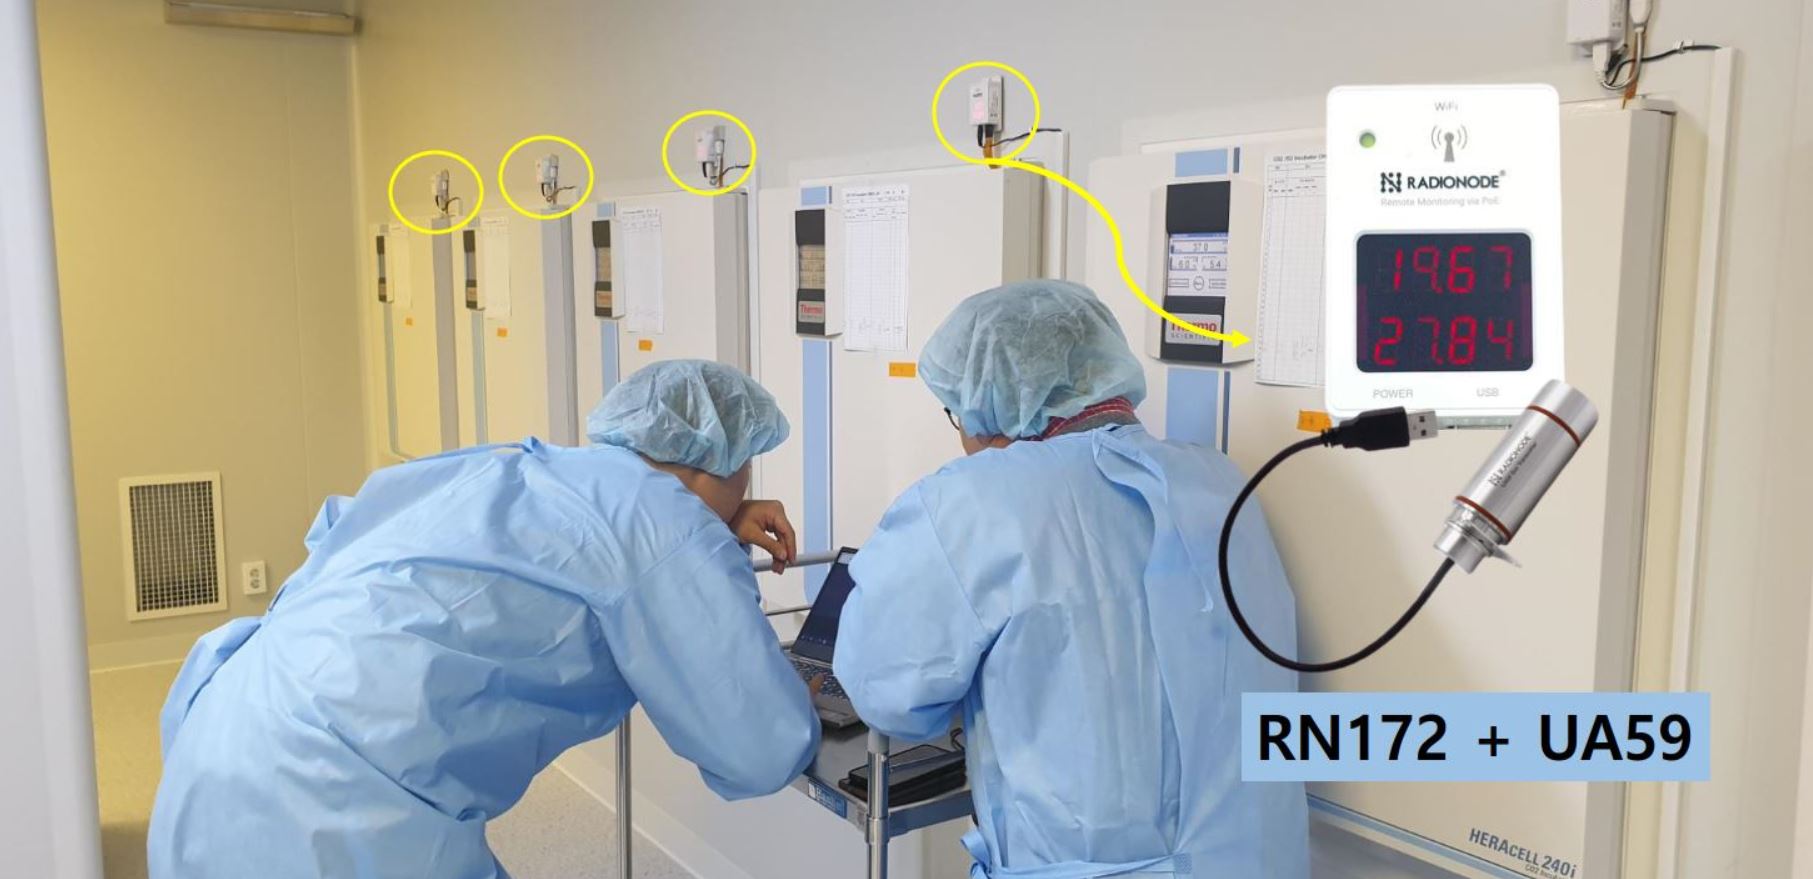 Radionode thiết bị chuyên dụng trong giám sát và cảnh báo nhiệt độ tủ vaccine